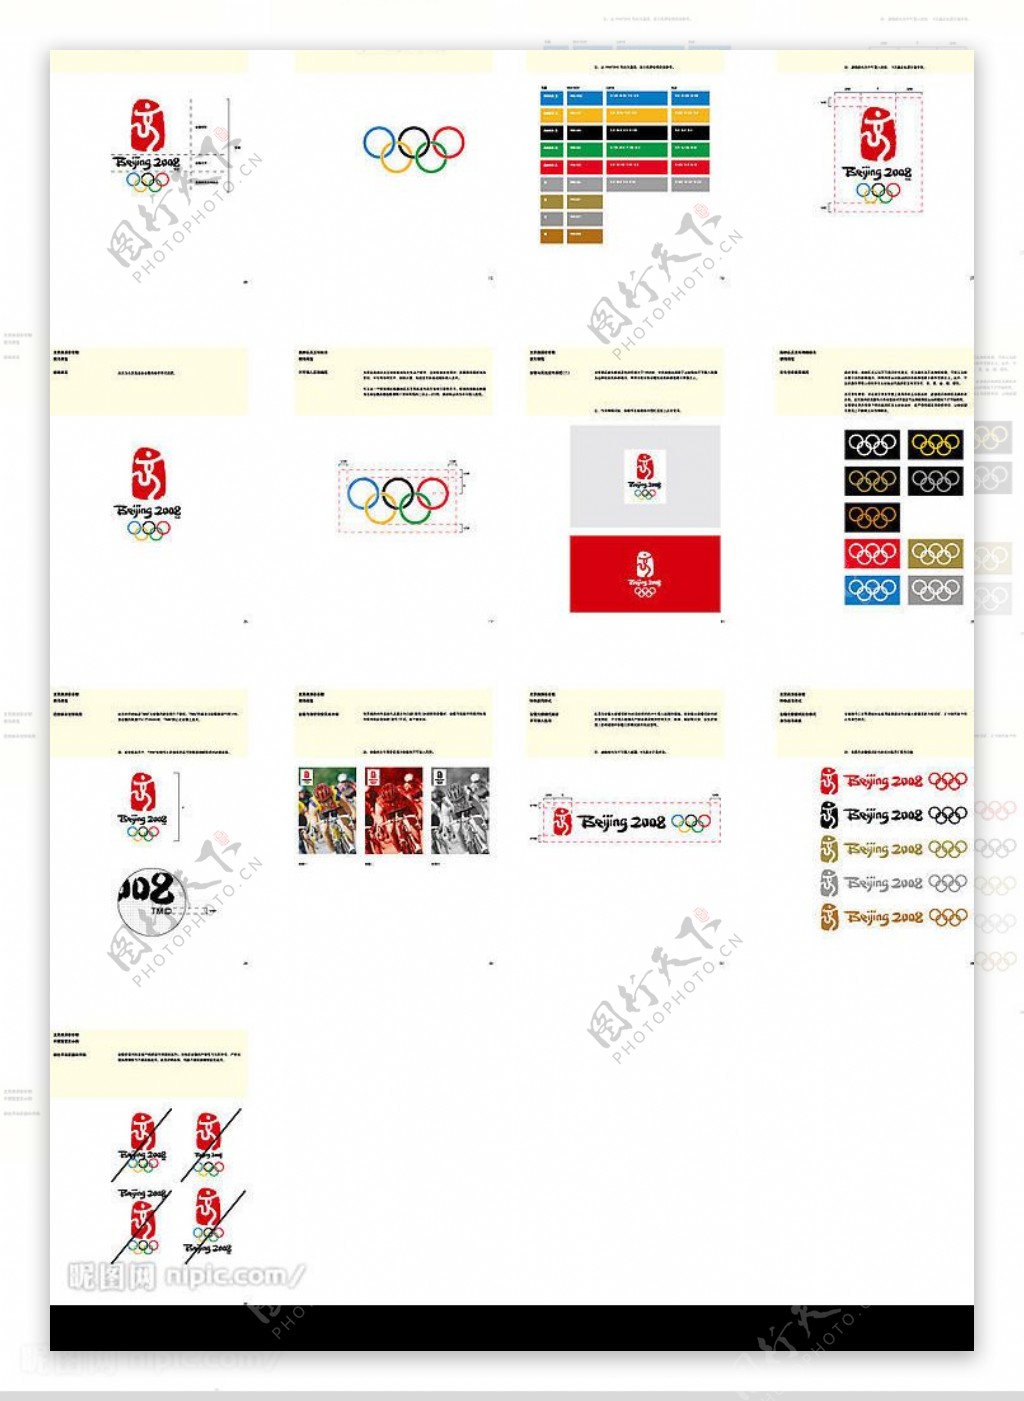 北京2008年奥运会徽规范管理手册中文版完整VI全套图片